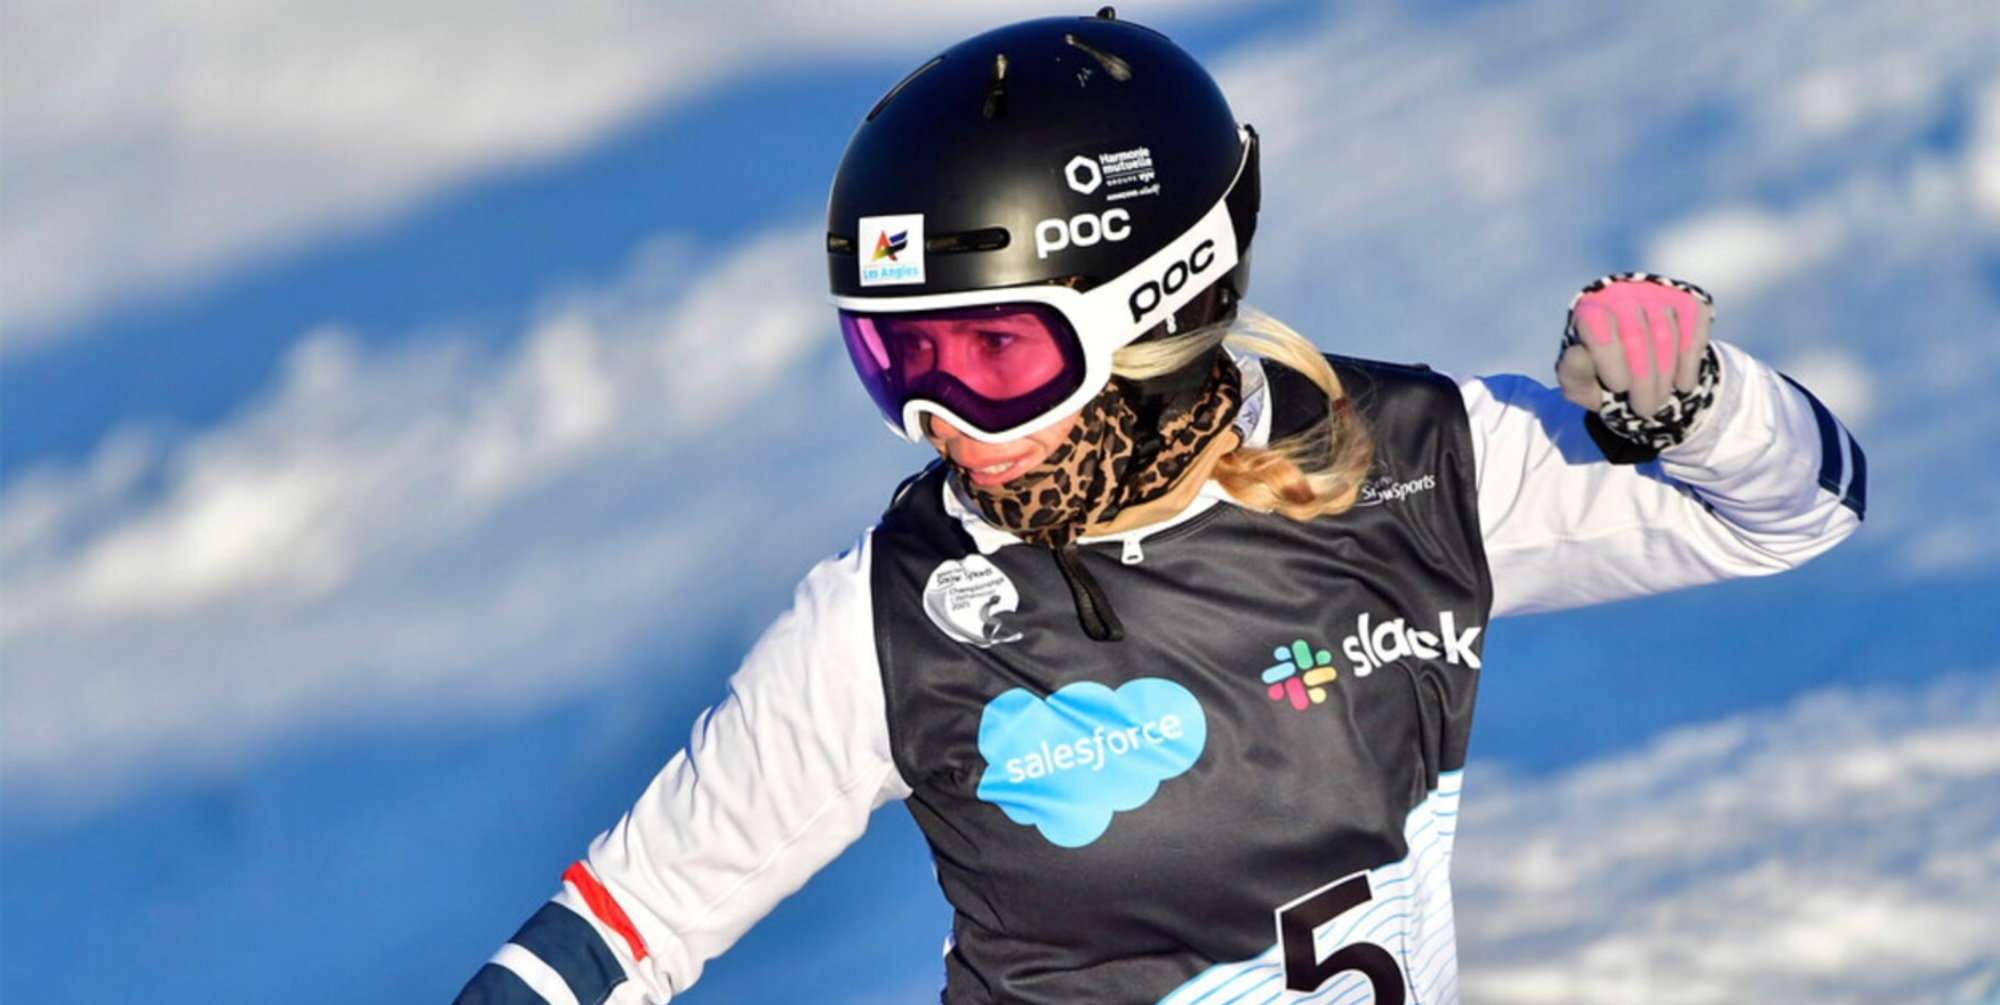 Cécile Hernandez a remporté la médaille d'argent en para snowboard lors des mondiaux 2022